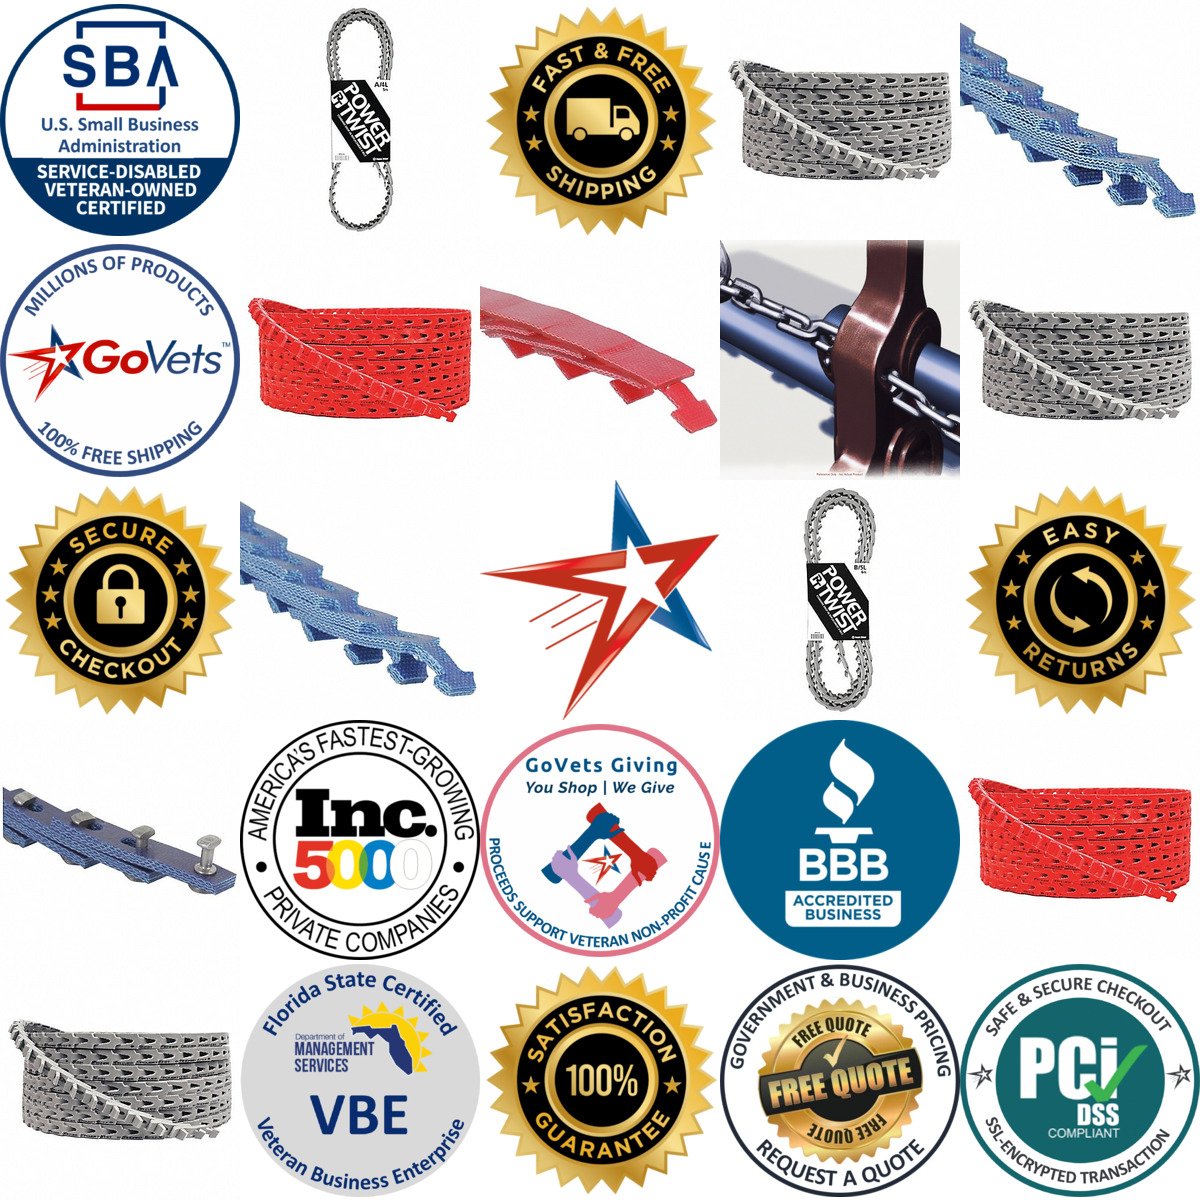 A selection of Adjustable Link v Belting products on GoVets